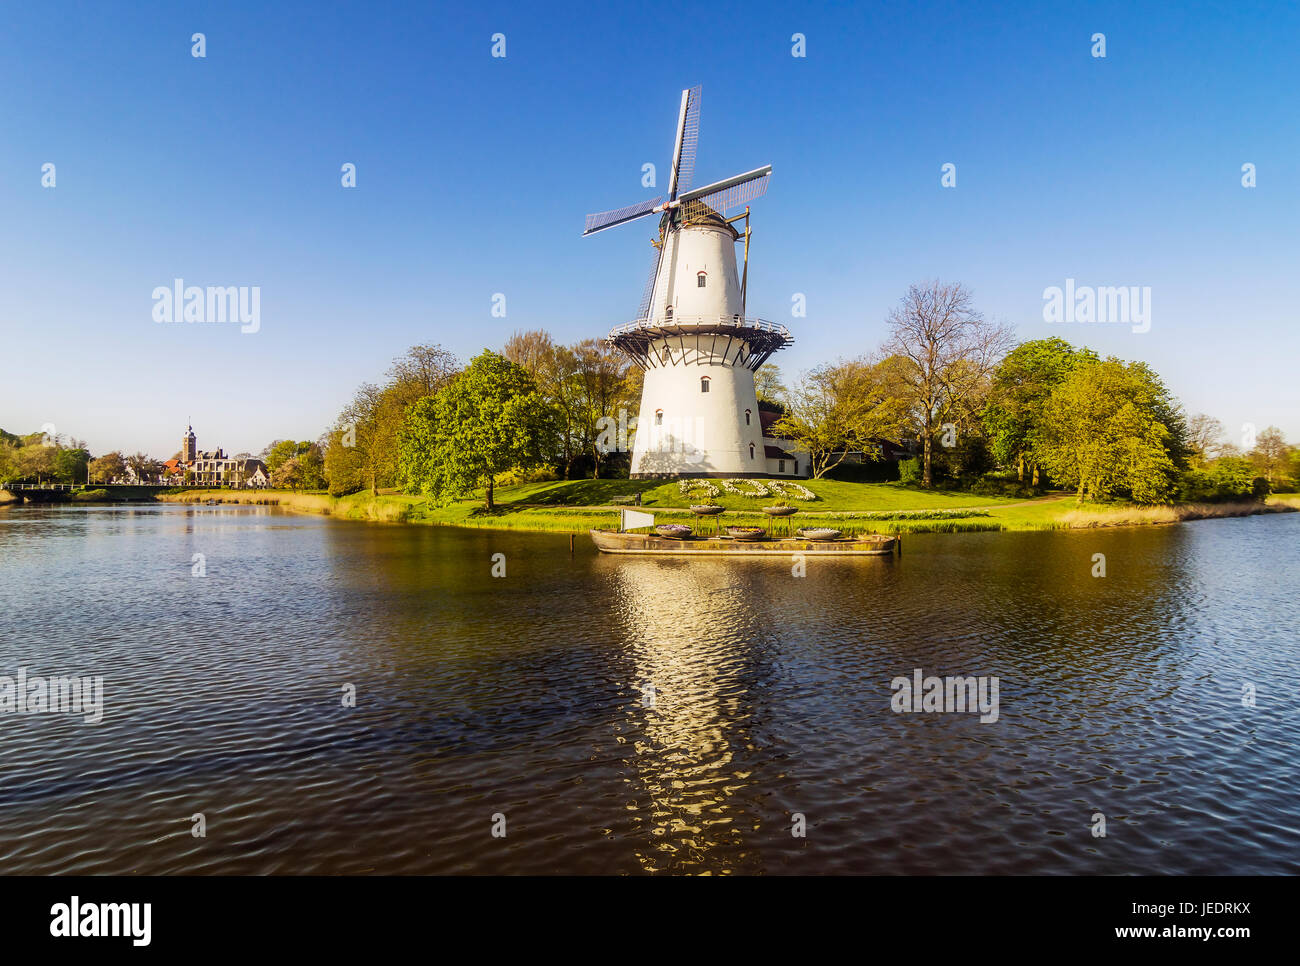 Netherlands, Zeeland, Middelburg, wind mill 'De Hoop' Stock Photo